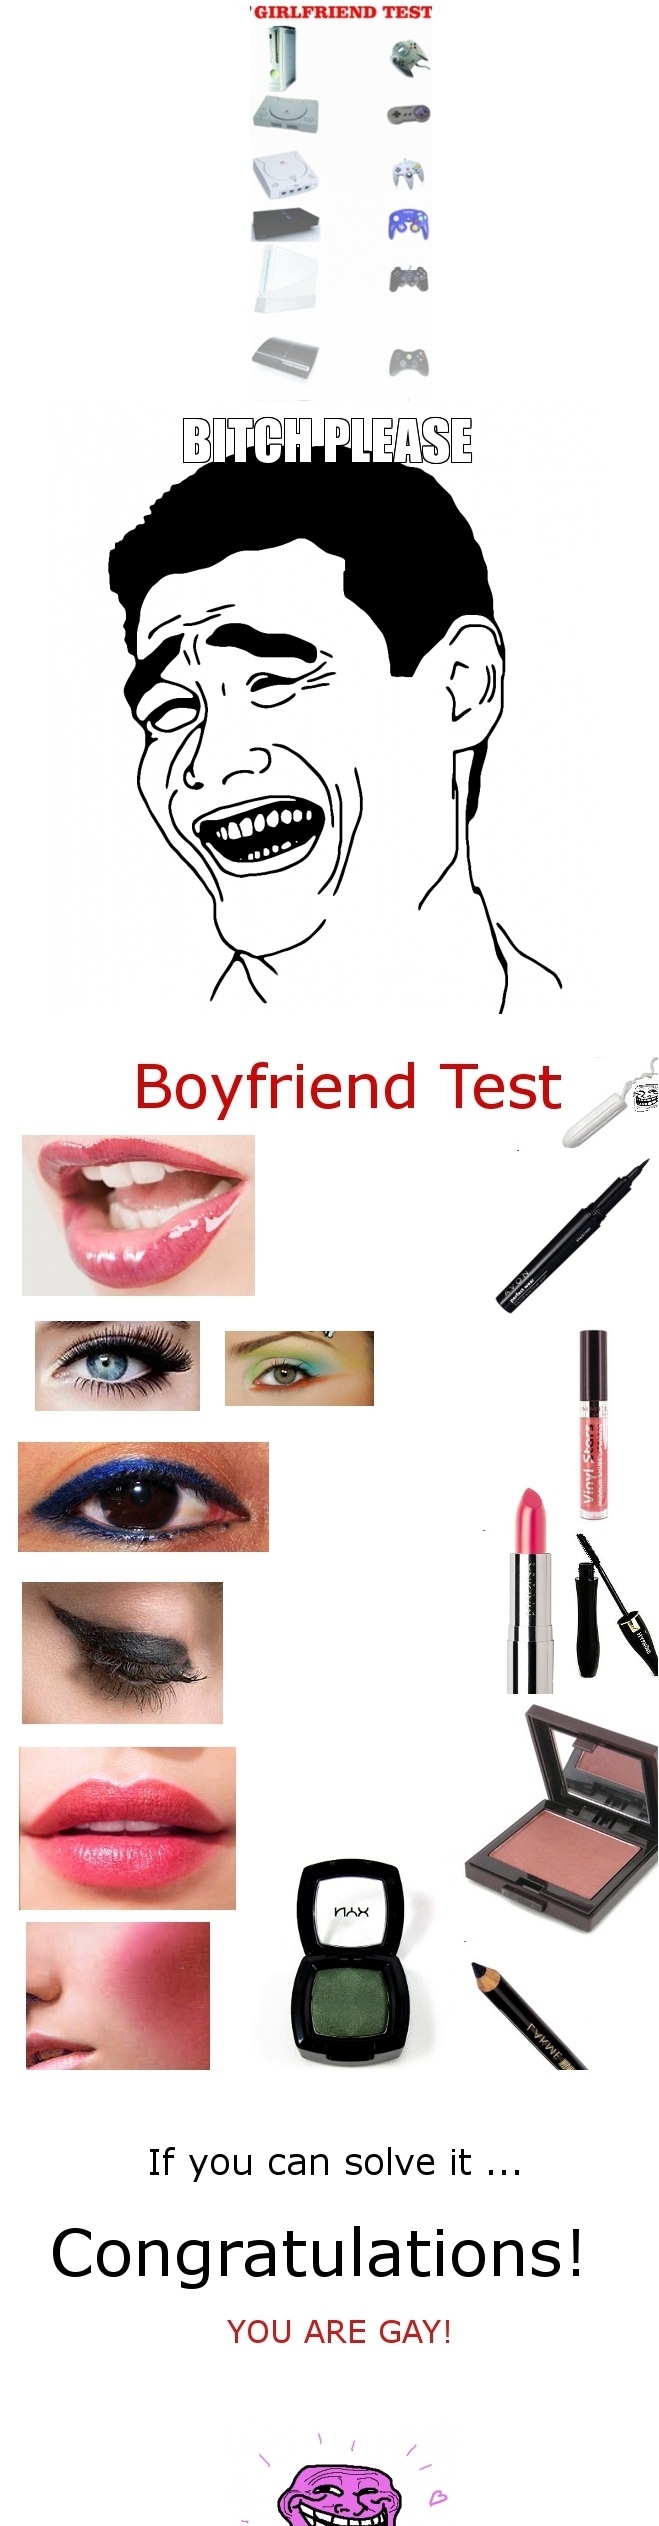 Boyfriend test